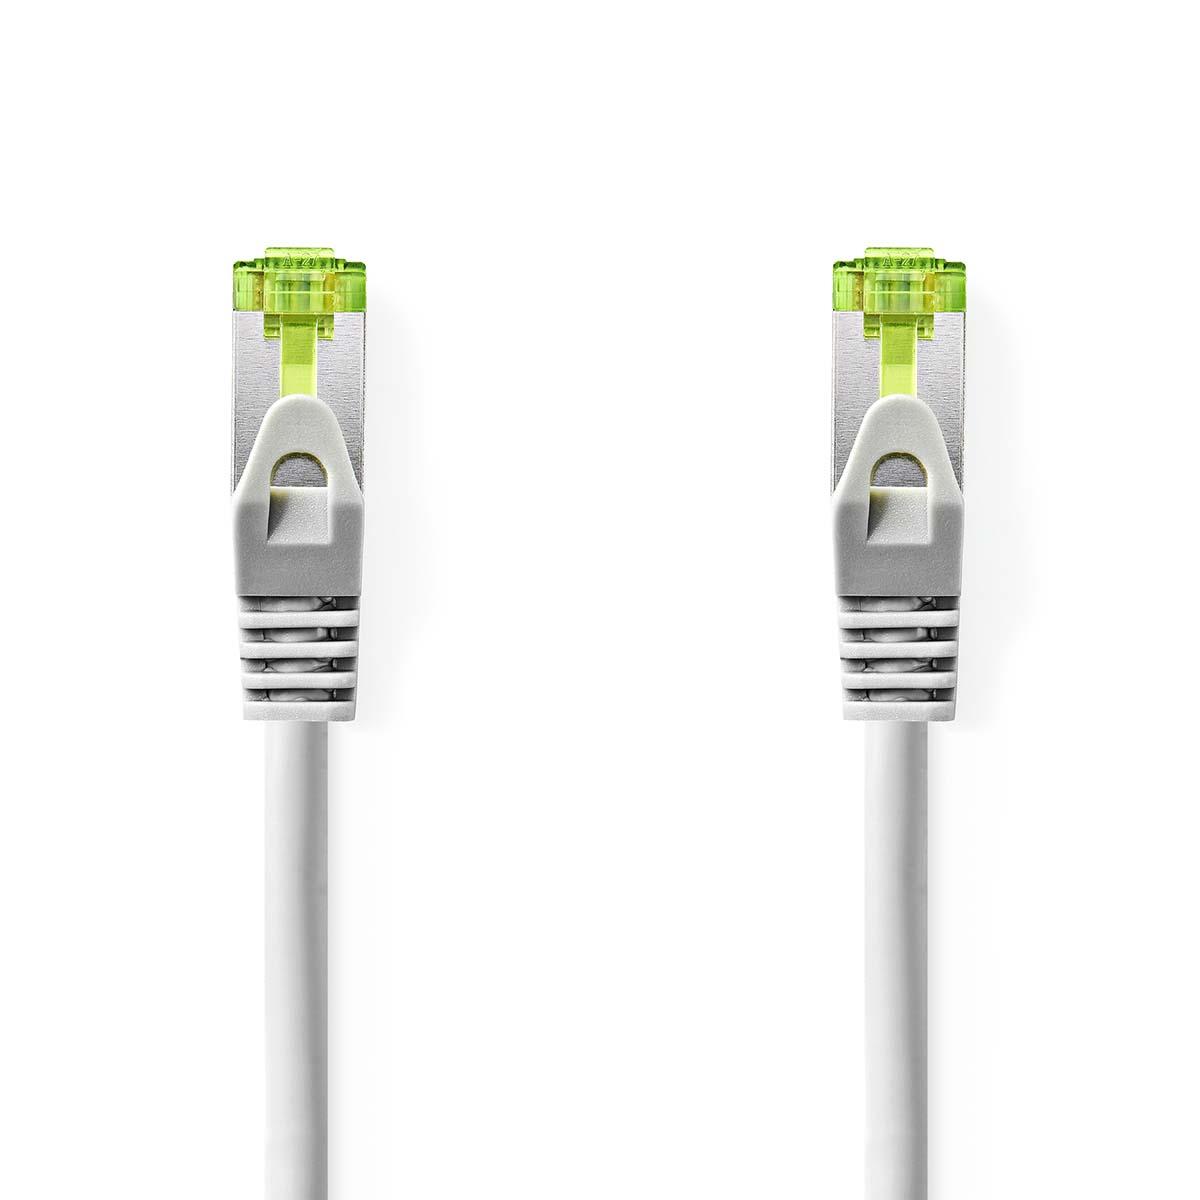 Cable ethernet rj45(8p8c) cat7 (10000 mbit/s) gris 10.0m